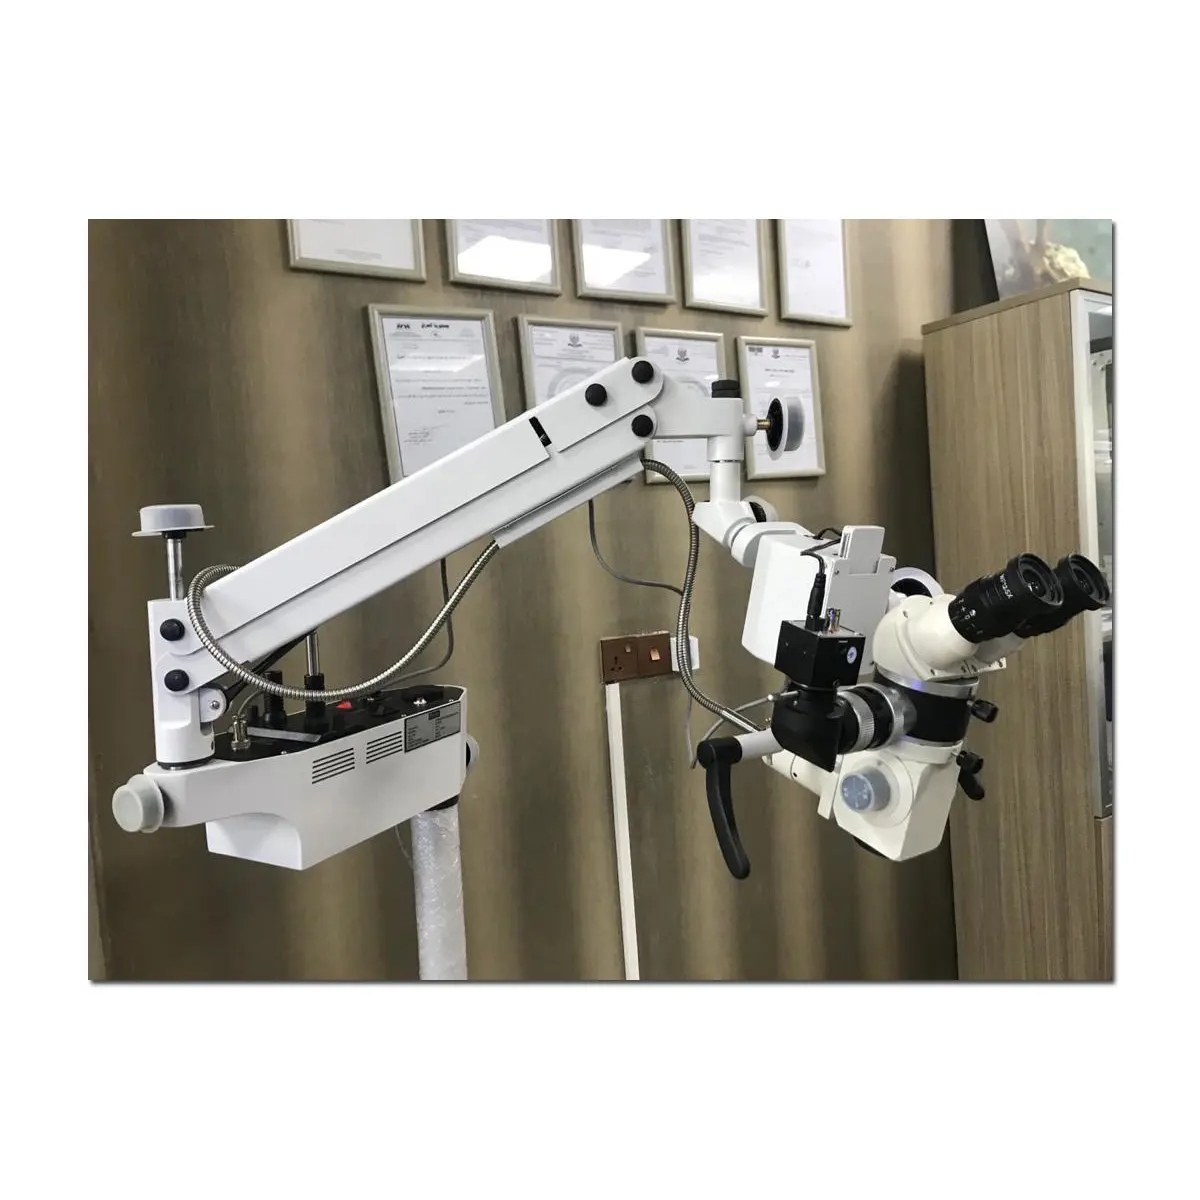 Microscopio oftalmico fornitore indiano-microscopio chirurgico per operazioni oculari-microscopio ENT esame operatorio chirurgico